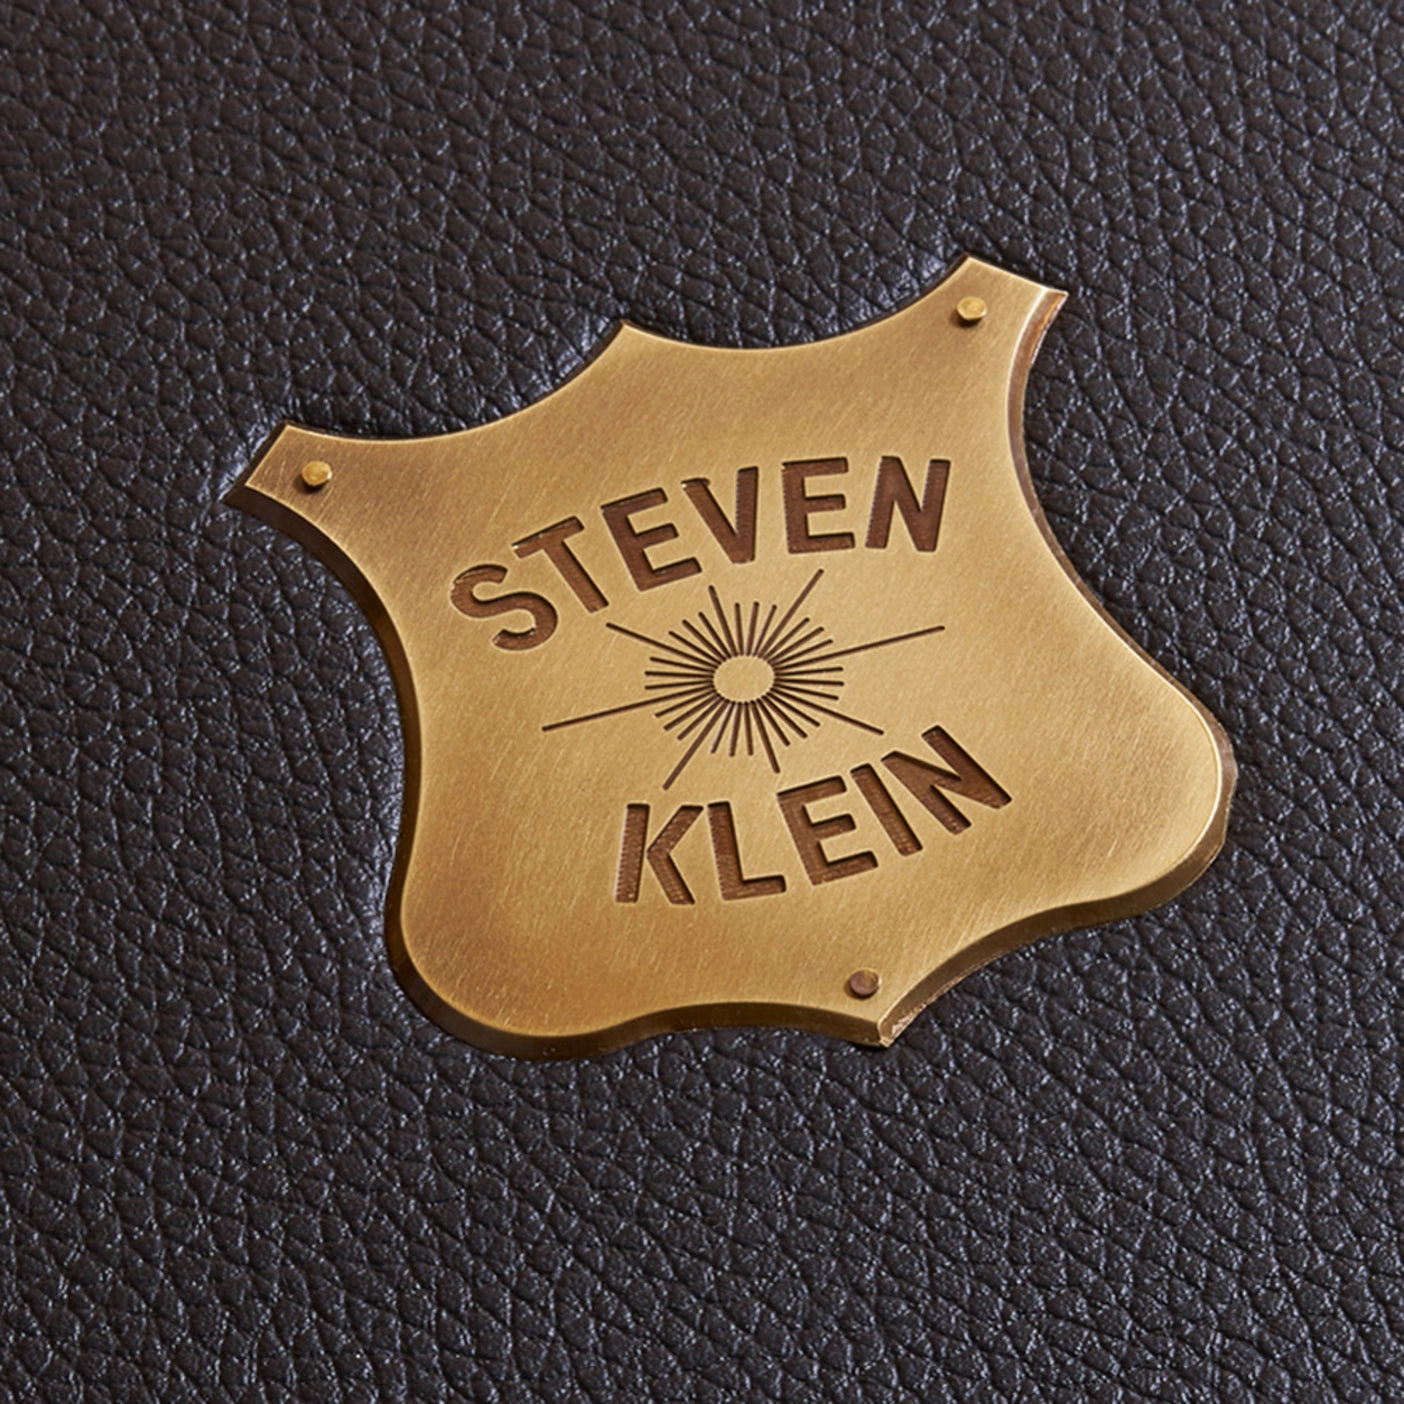 Steven Klein Luxury (pre-order)